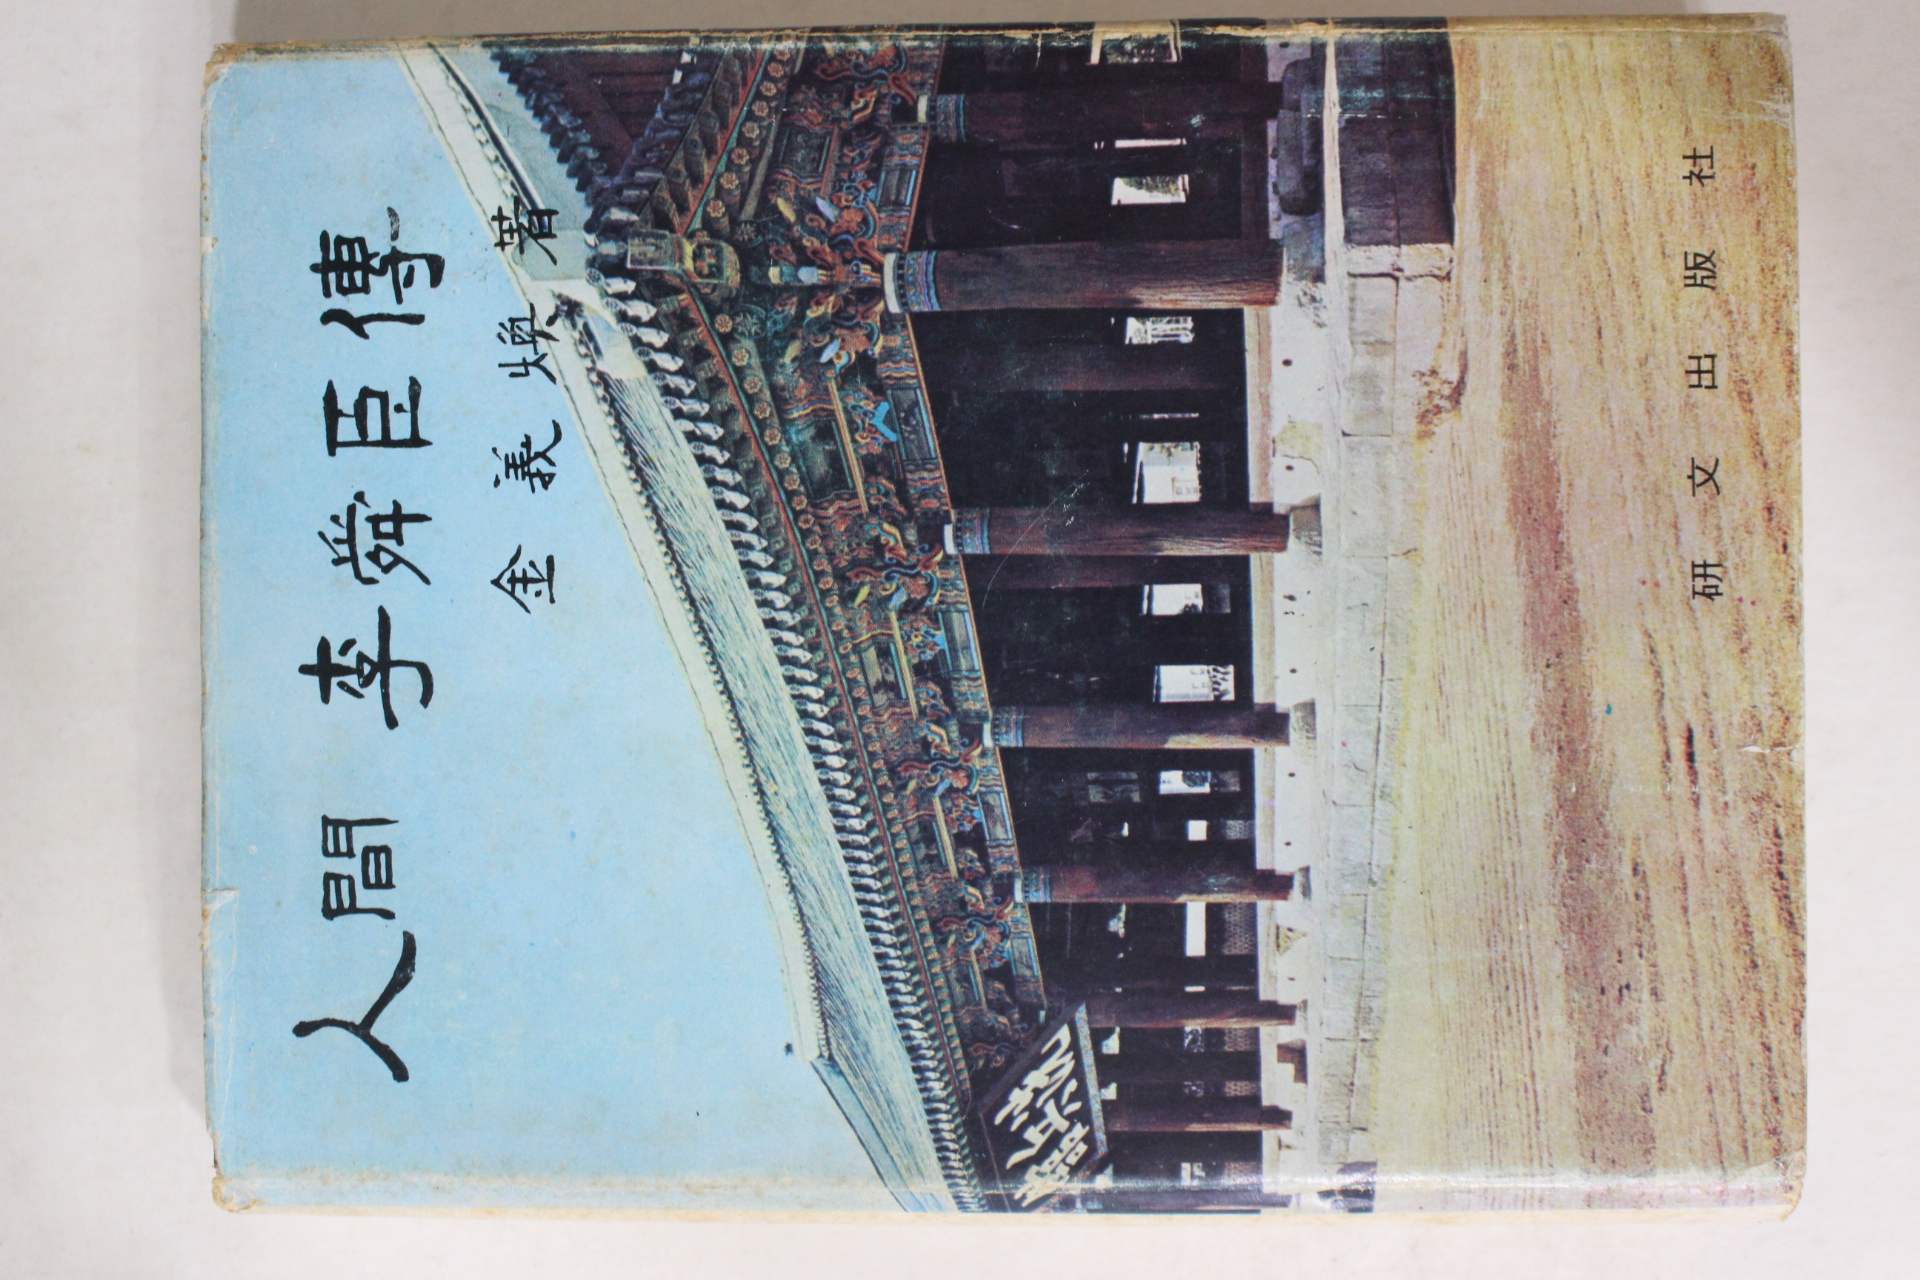 1972년 김의환(金義煥) 인간이순신전(人間李舜臣傳) 저자싸인본